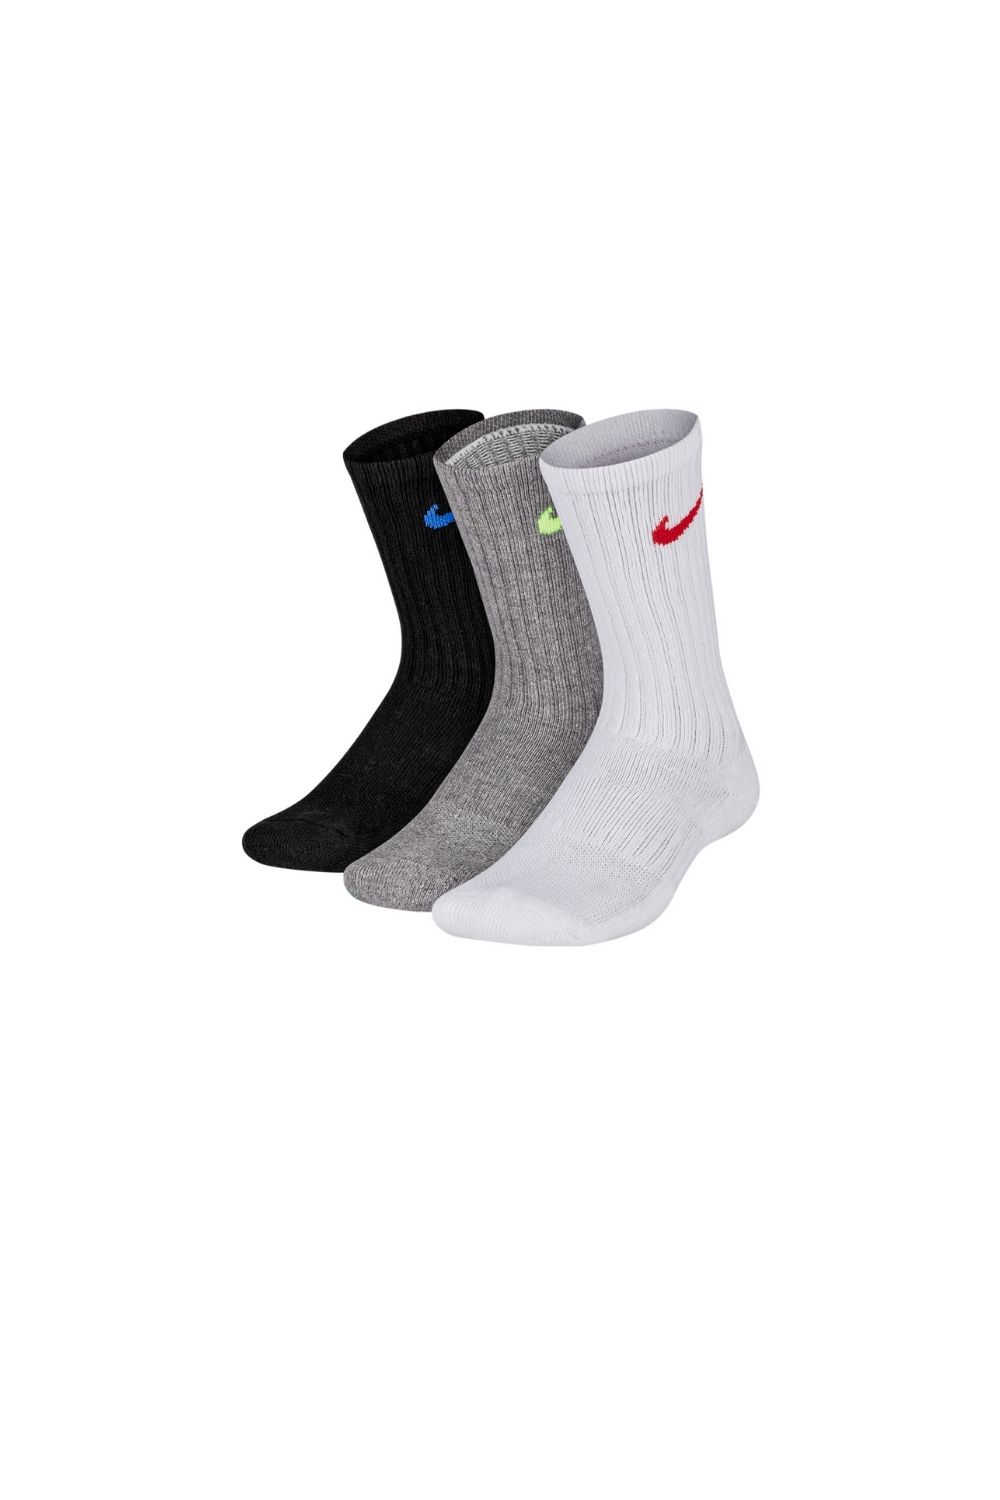 NIKE – Παιδικό σετ 3 κάλτσες NIKE μαύρο-γκρι-λευκό 1599301.1-0201